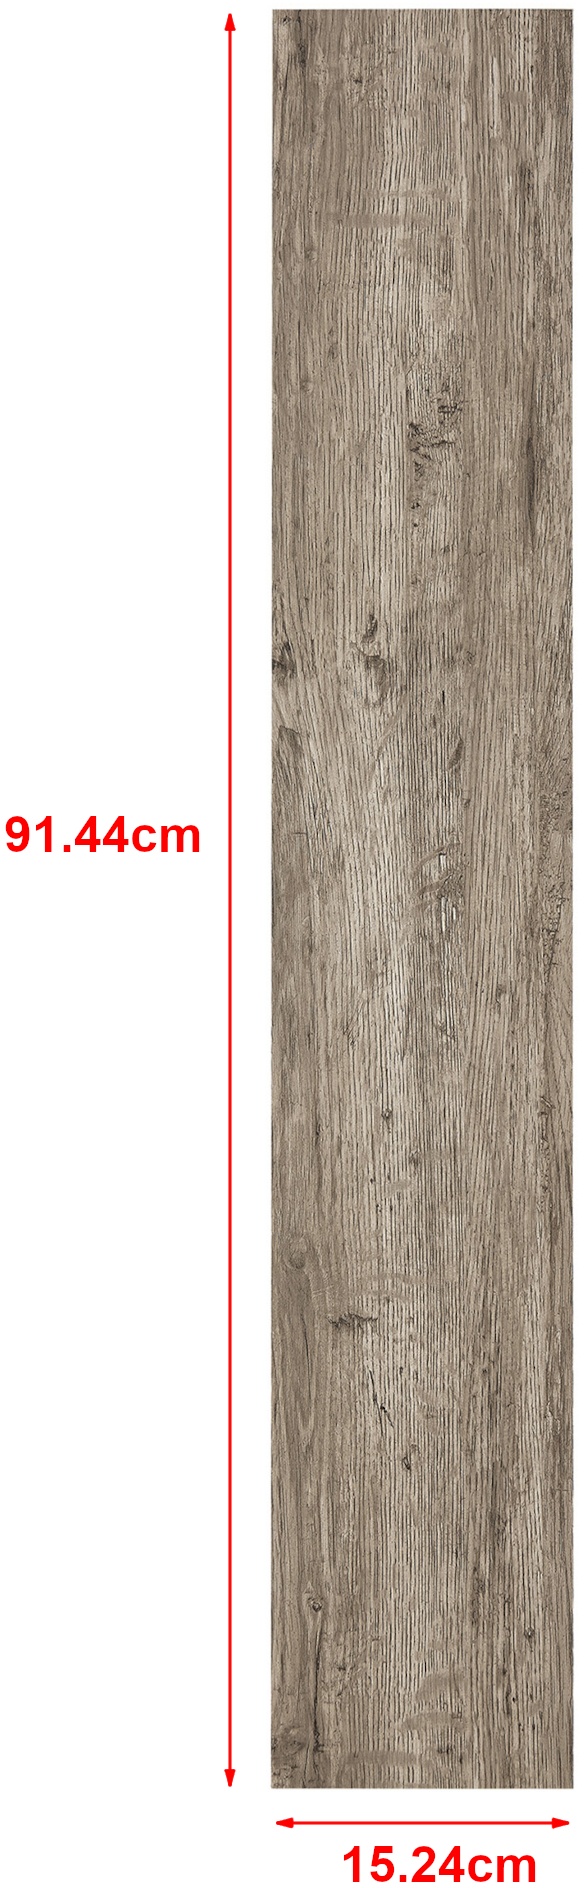 NEU.HOLZ Vinyl Laminat Vanola selbstklebend 3,92m2 Grey Accent Oak